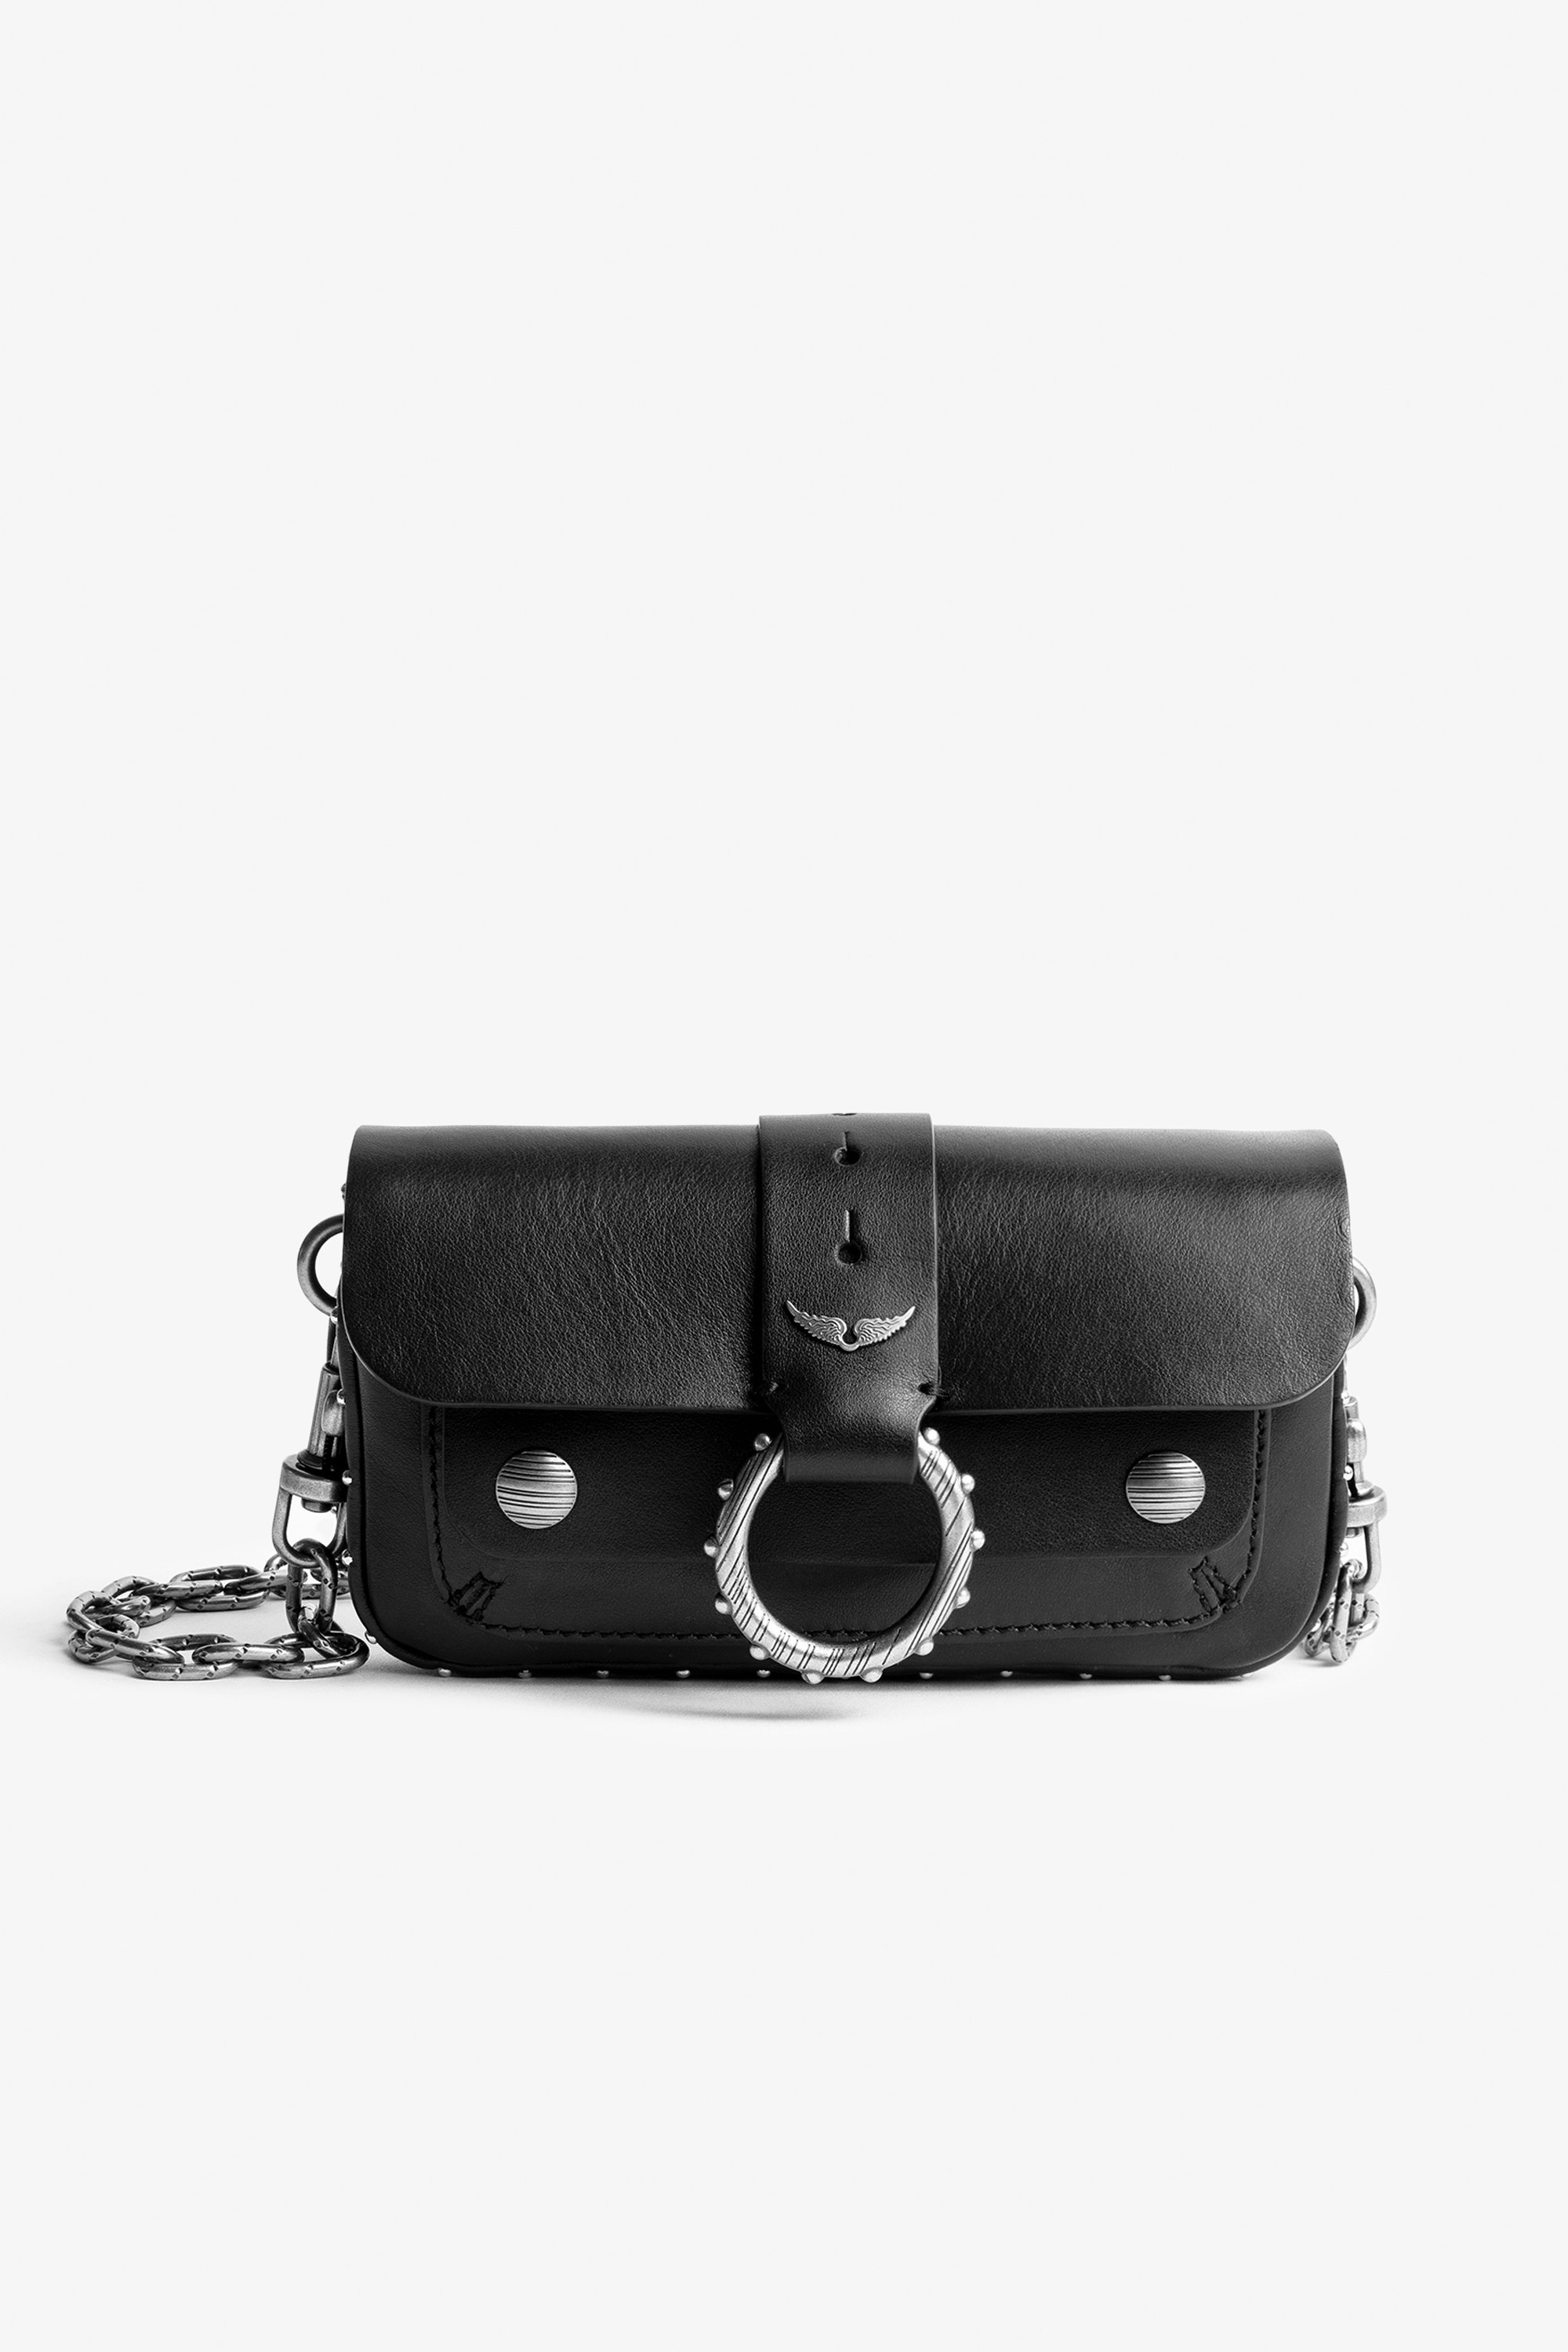 Tasche Kate Wallet - Ikonische Damen-Handtasche Kate Wallet aus schwarzem Glattleder.